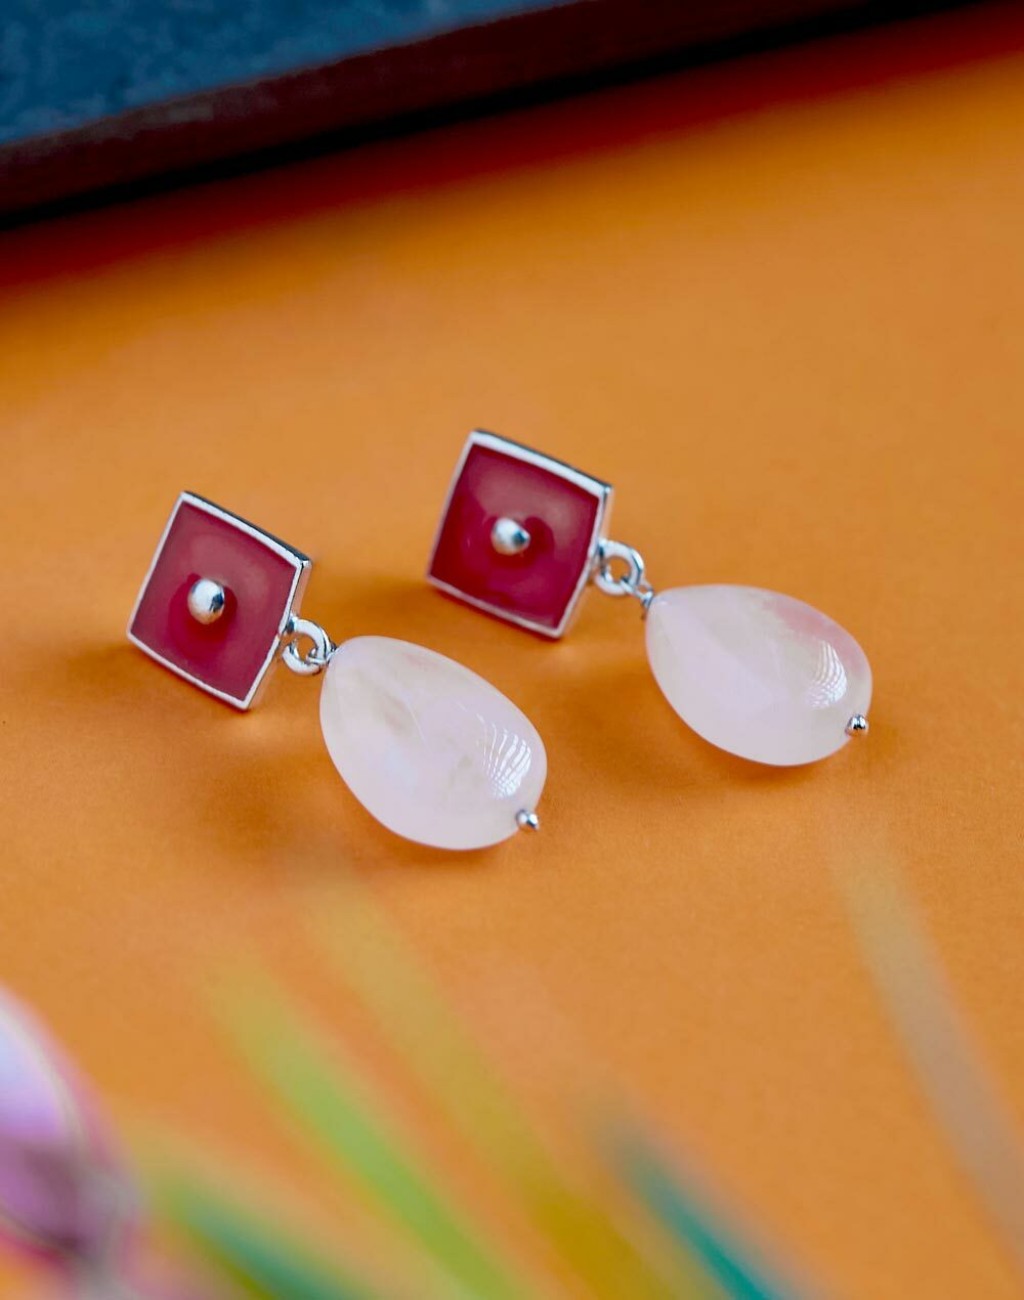 Buy 925 Sterling Silver Very Long Earring Woman Earring Online in India -  Etsy | Etsy earrings, Online earrings, Women's earrings